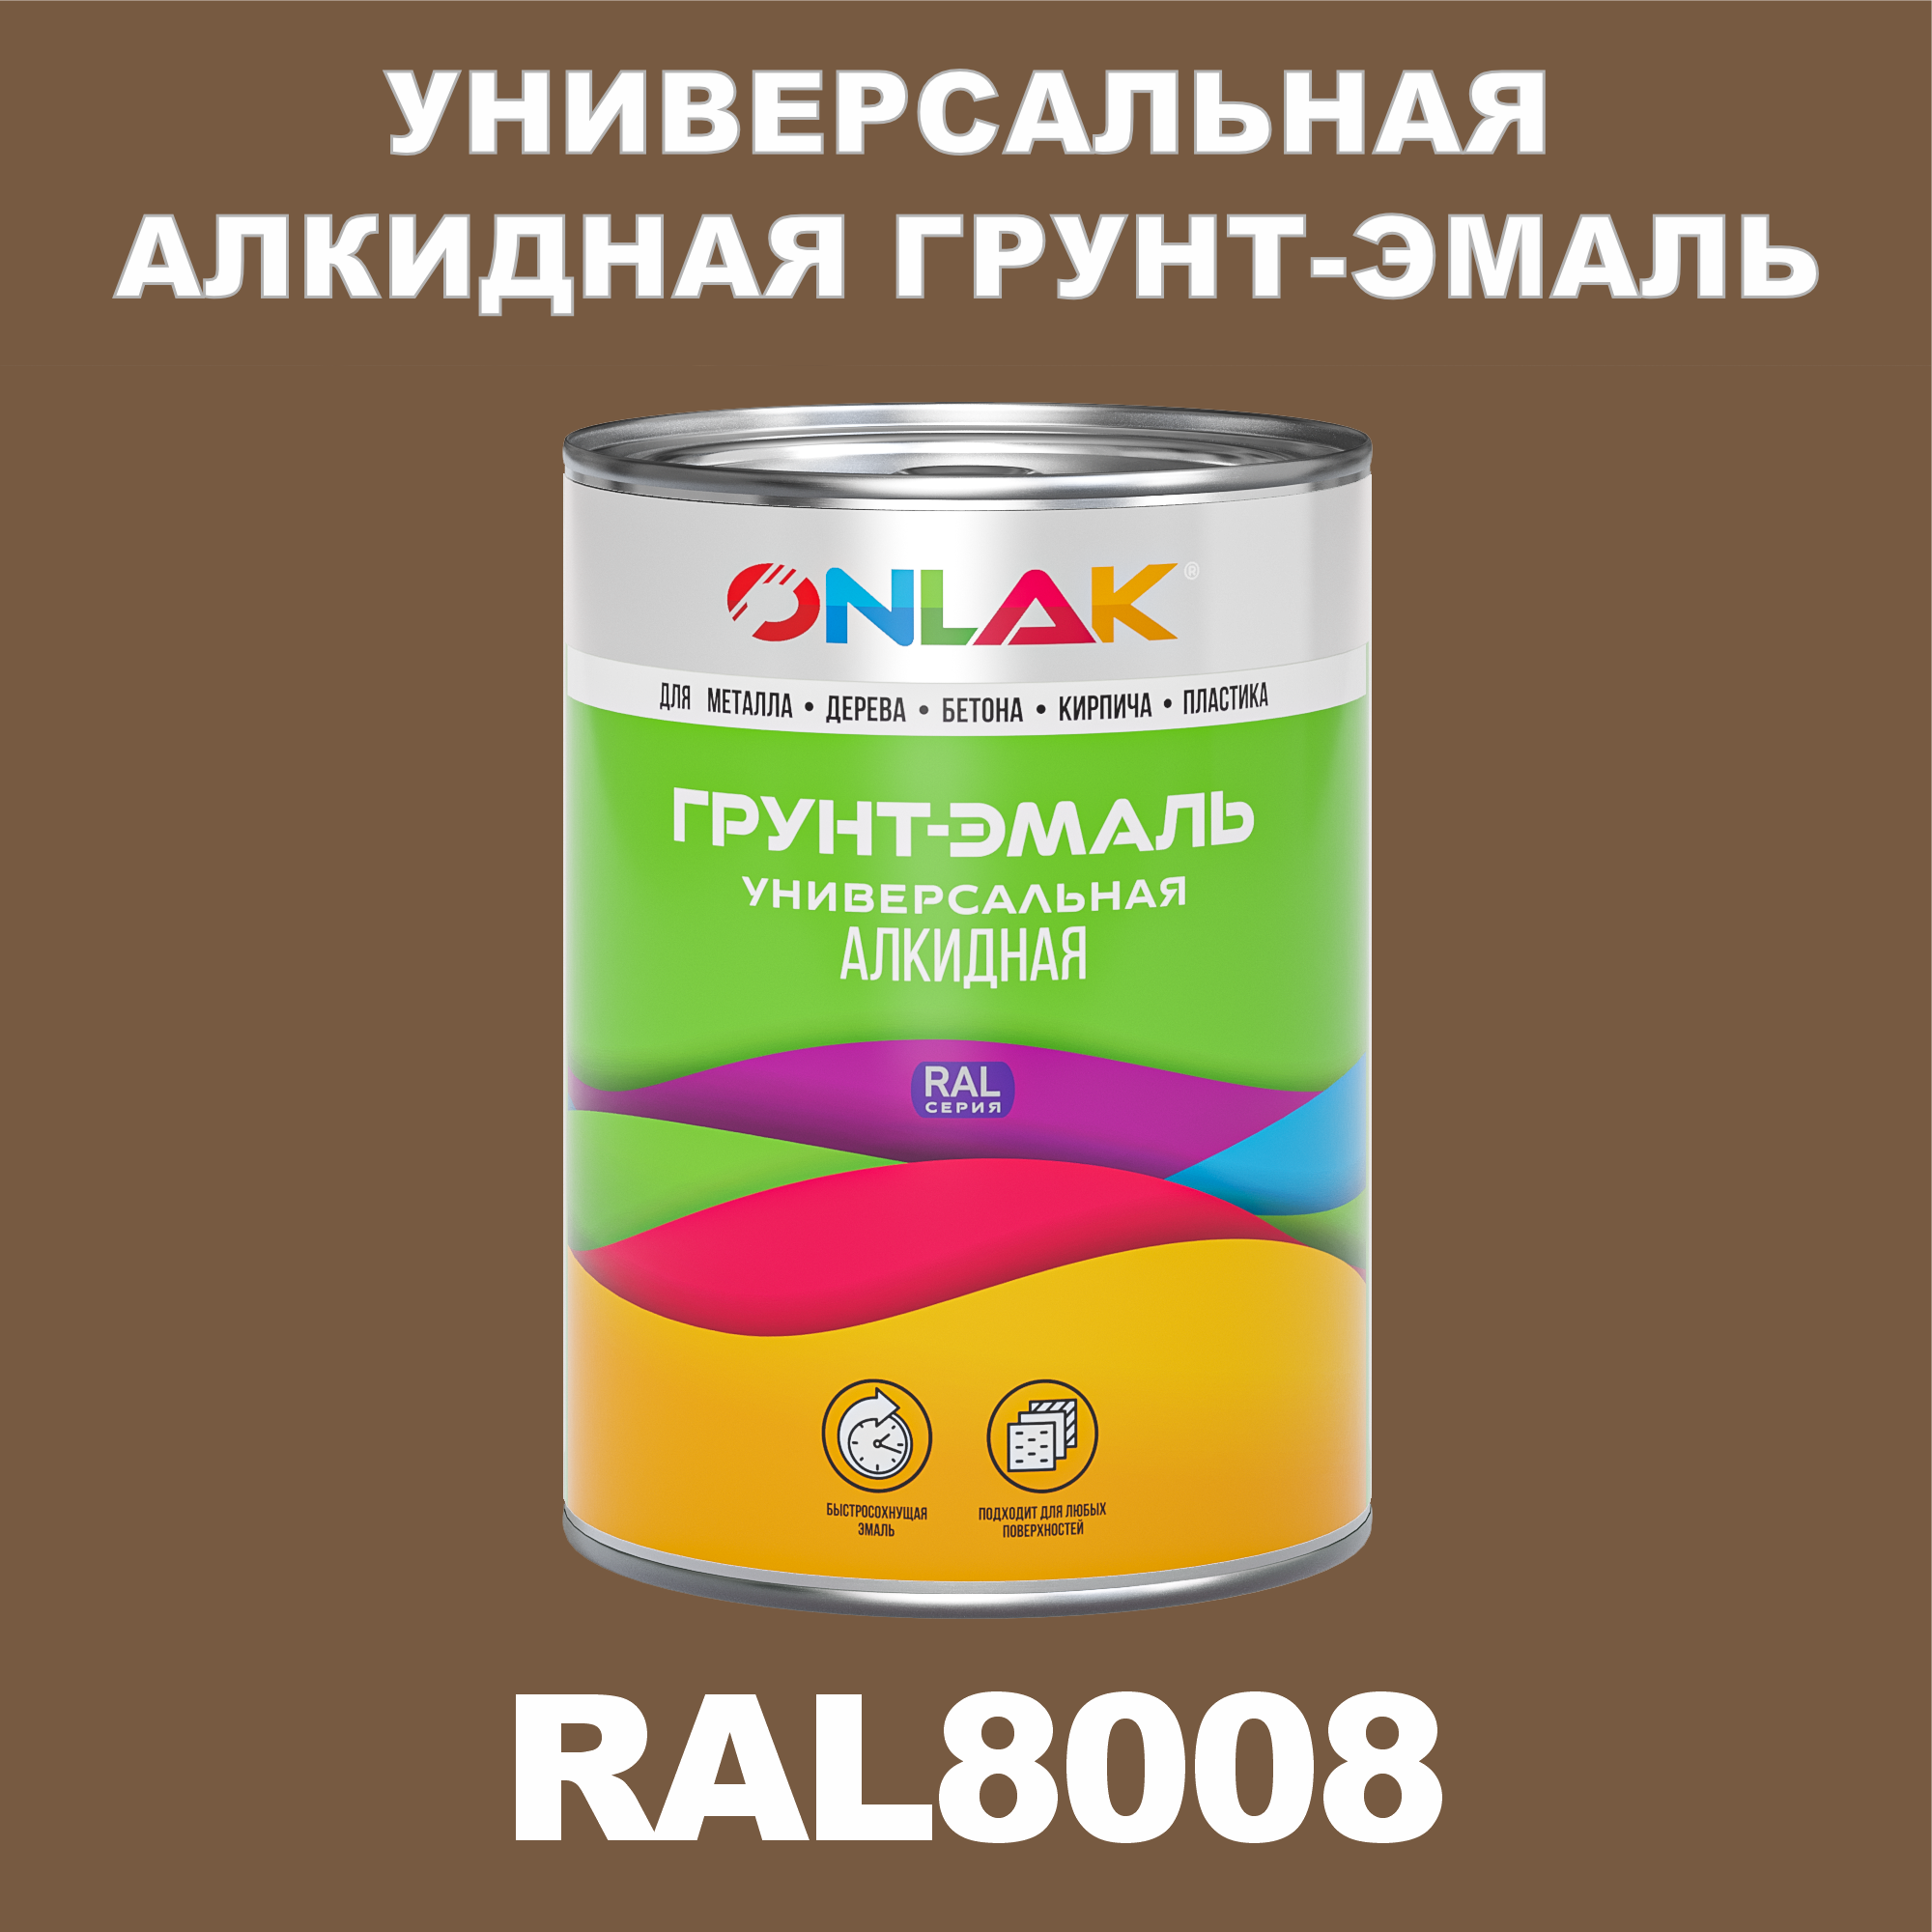 Грунт-эмаль ONLAK 1К RAL8008 антикоррозионная алкидная по металлу по ржавчине 1 кг грунт эмаль yollo по ржавчине алкидная зеленая 0 9 кг